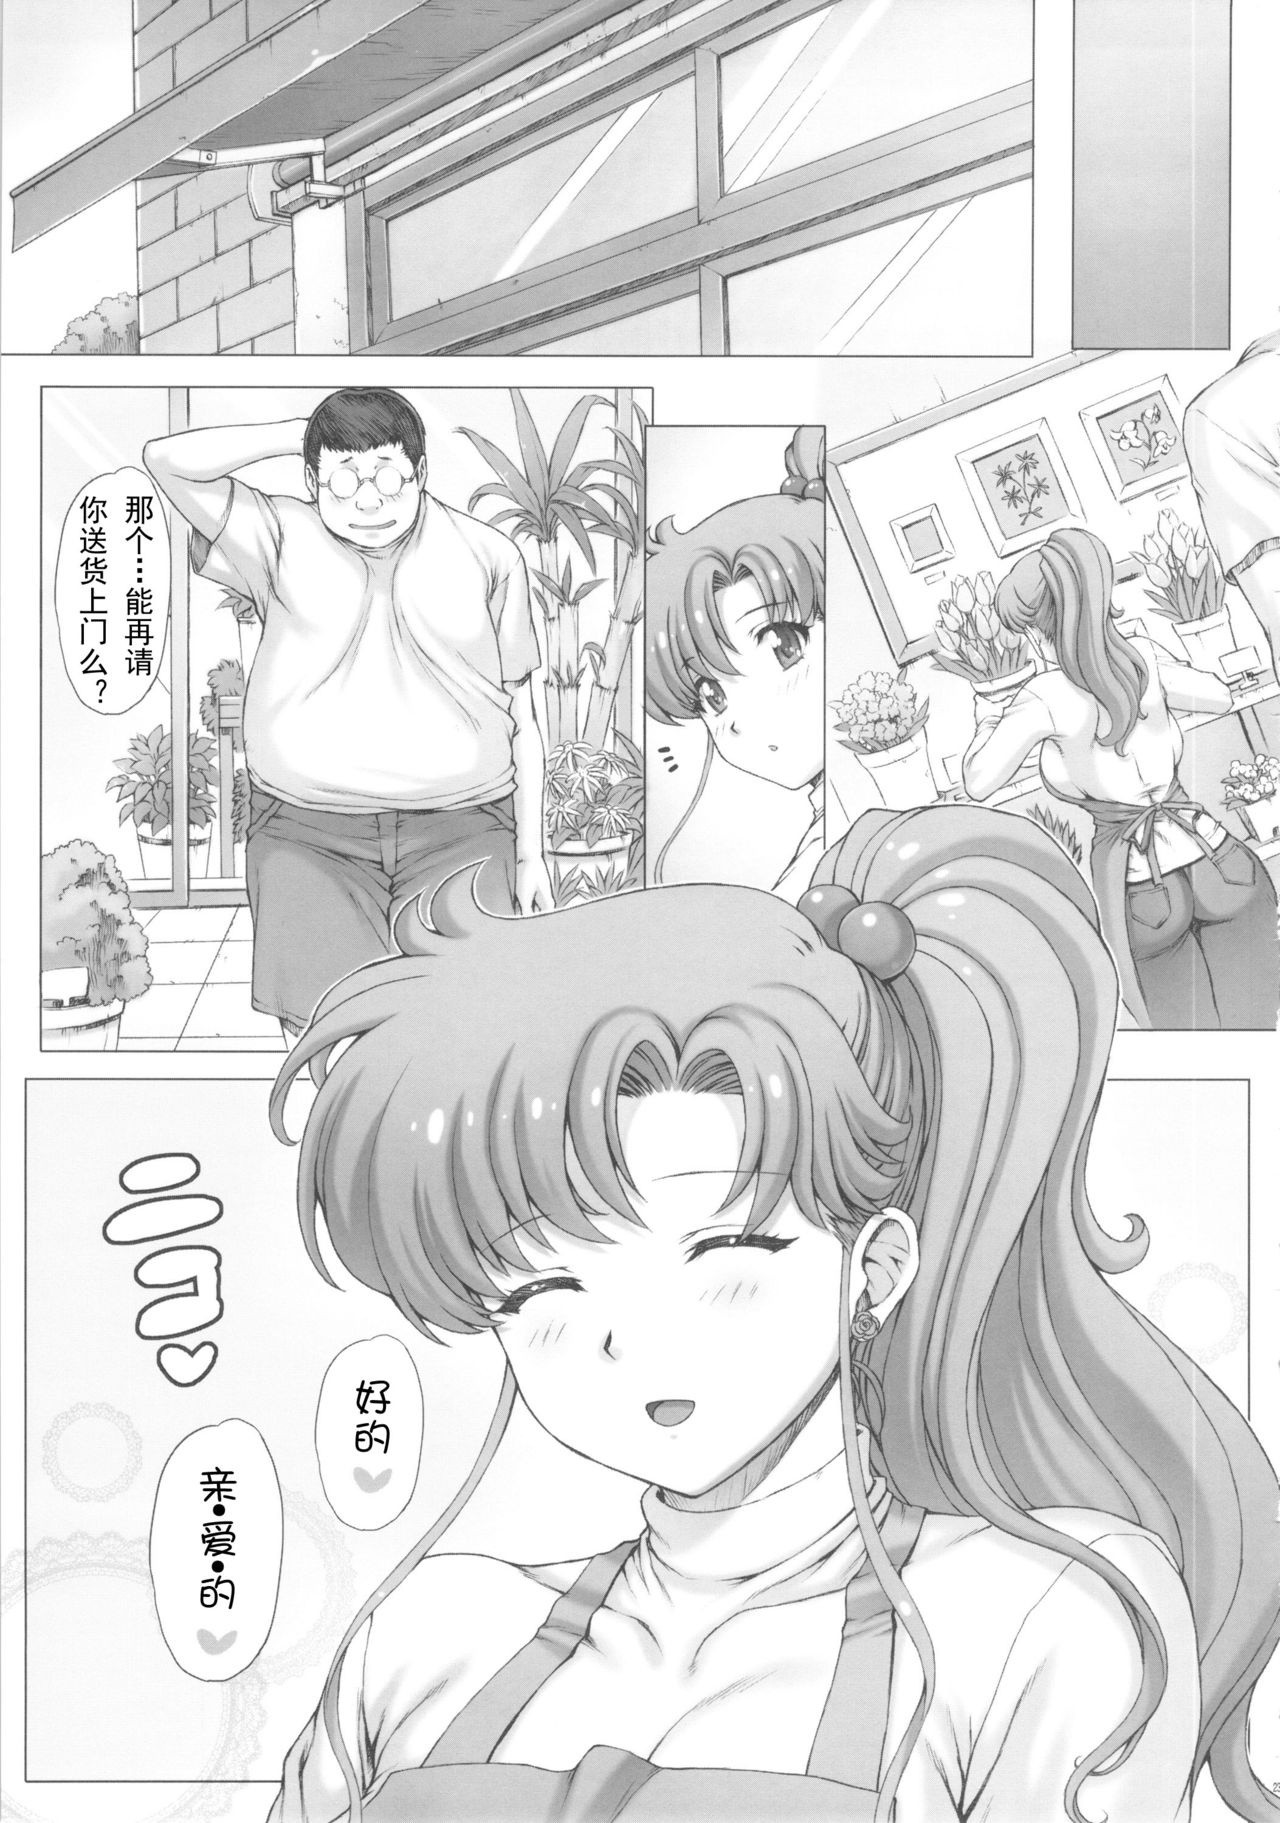 Inka + Omake Bon + Postcard hentai manga picture 24